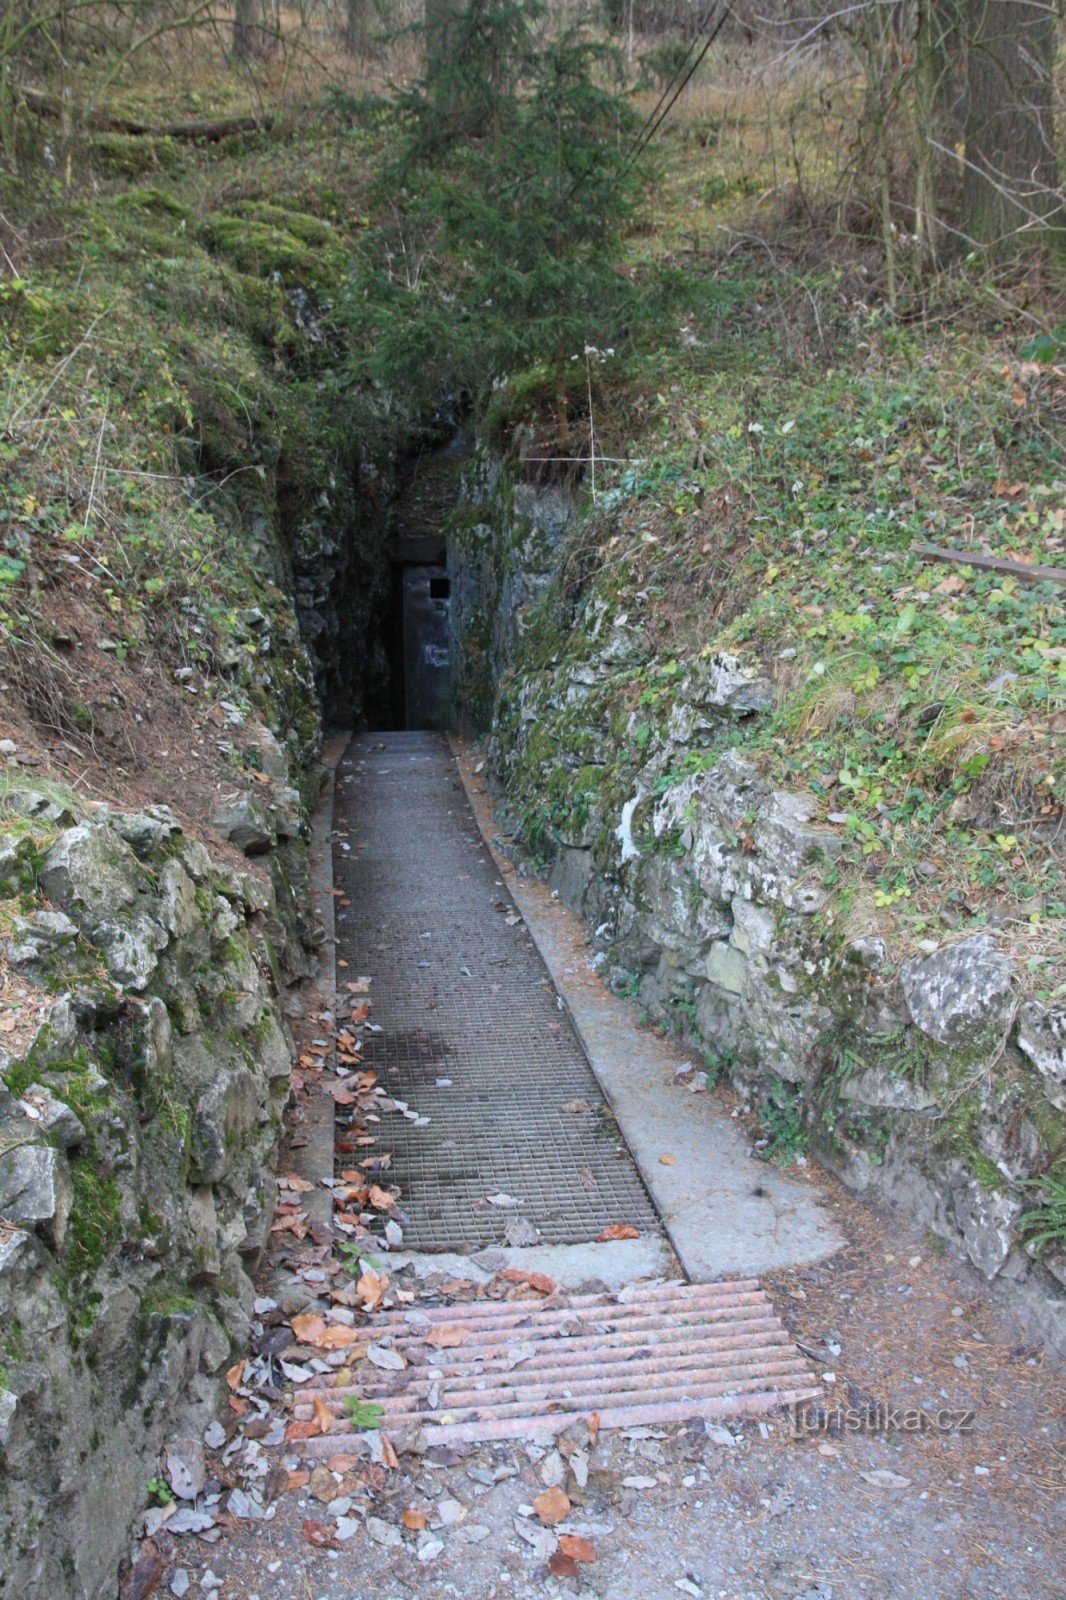 Η κάτω είσοδος του σπηλαίου Císařské, σήμερα η είσοδος της σπηλαιολογικής κλινικής